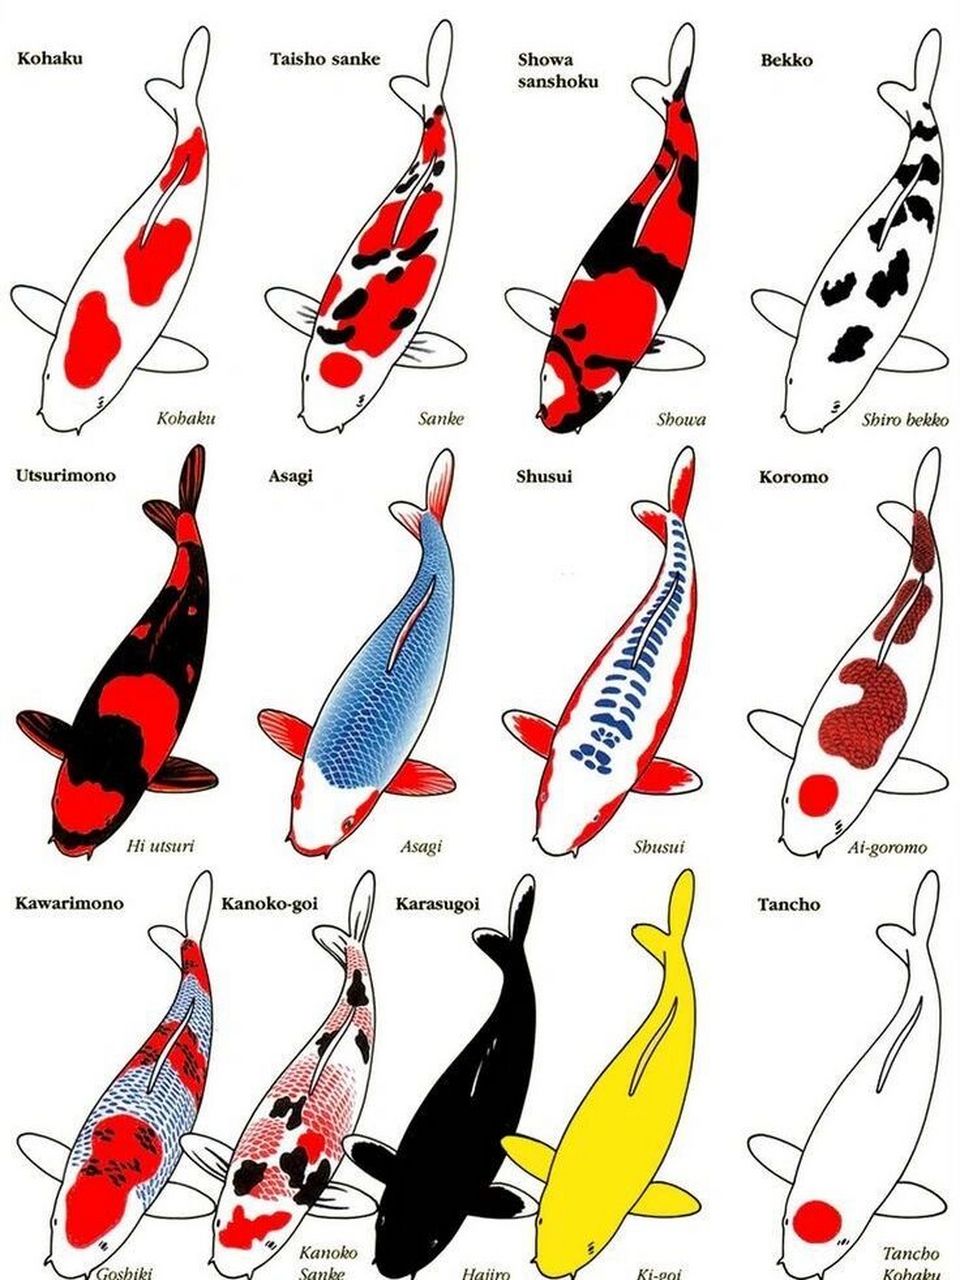 锦鲤种类图谱图片